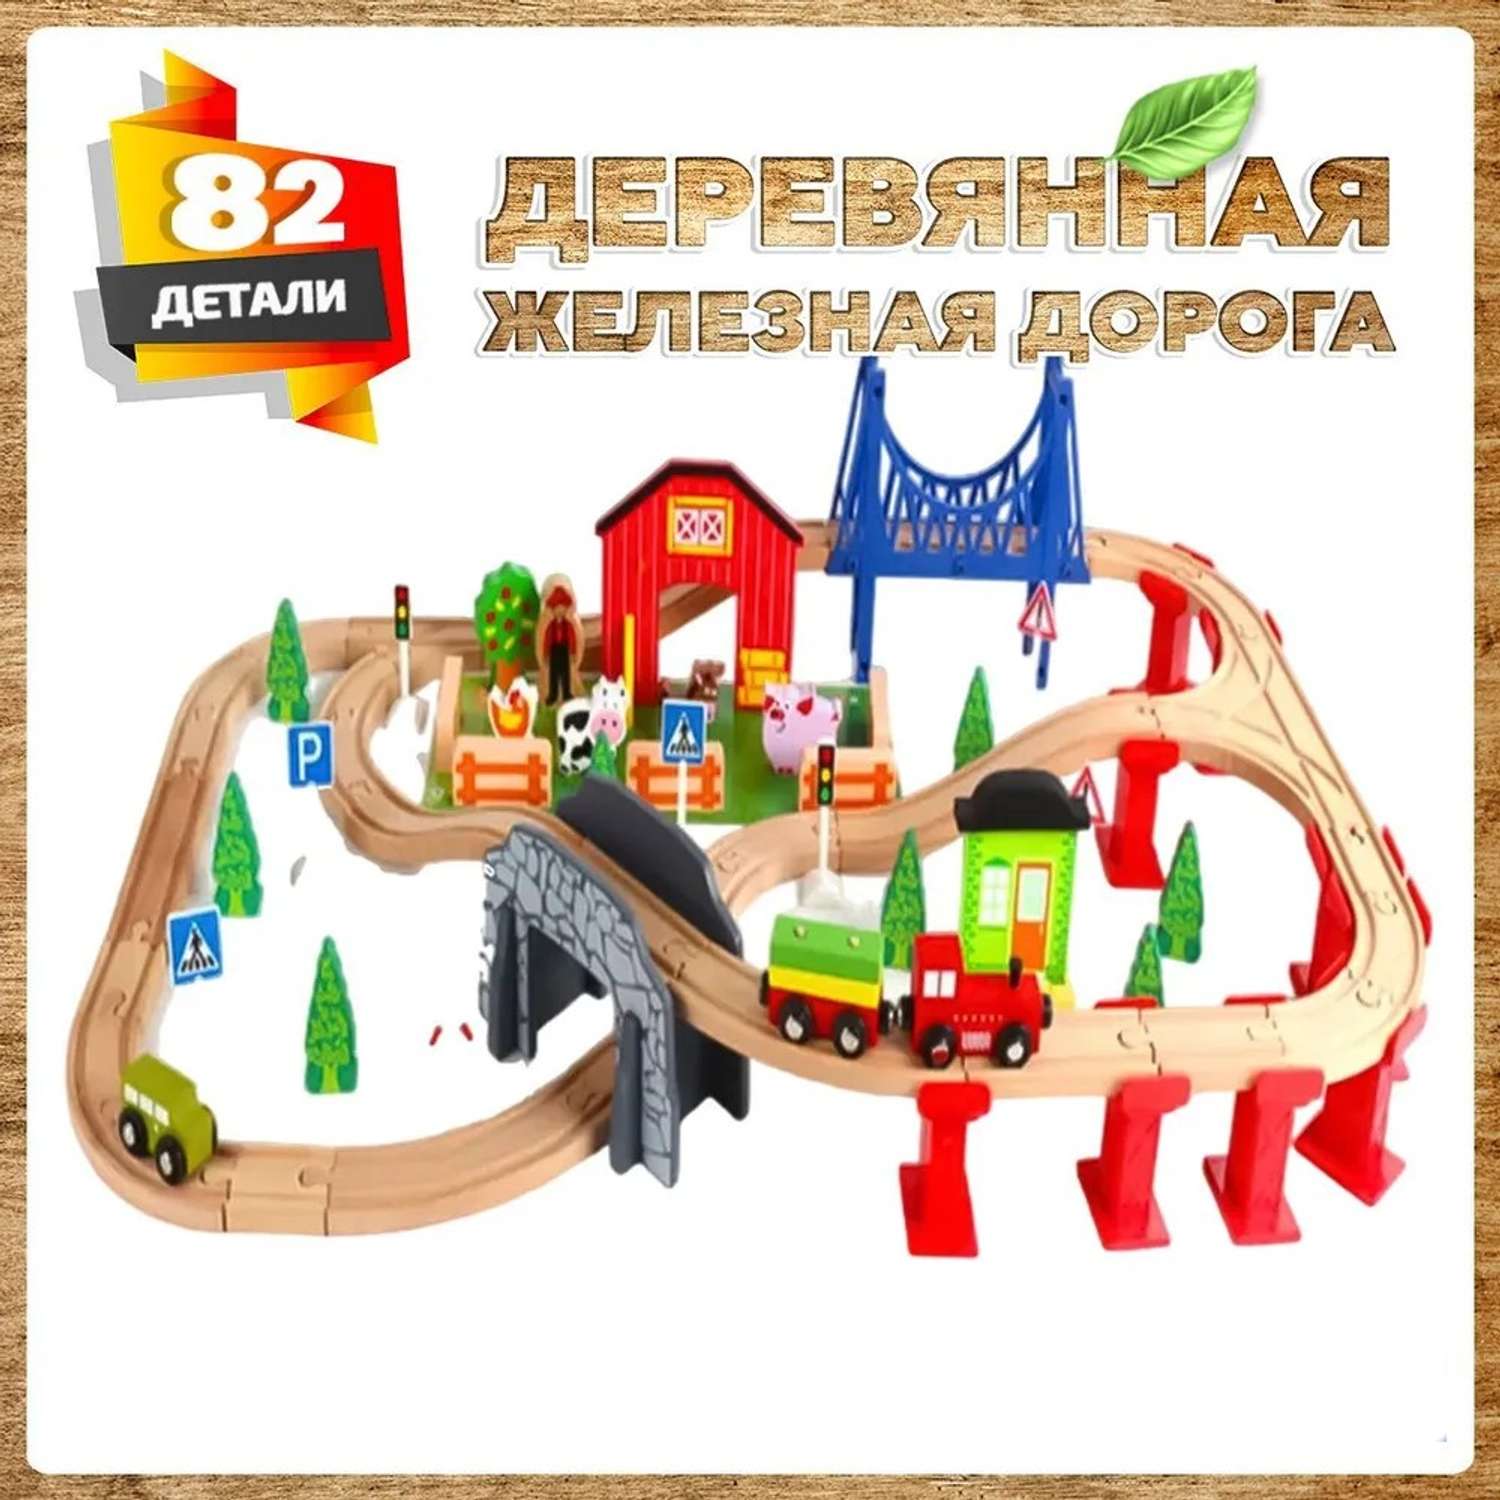 Деревянная железная дорога А.Паровозиков 82 детали развивающая АП-005/ПЛ-TQ-1703-82 - фото 1